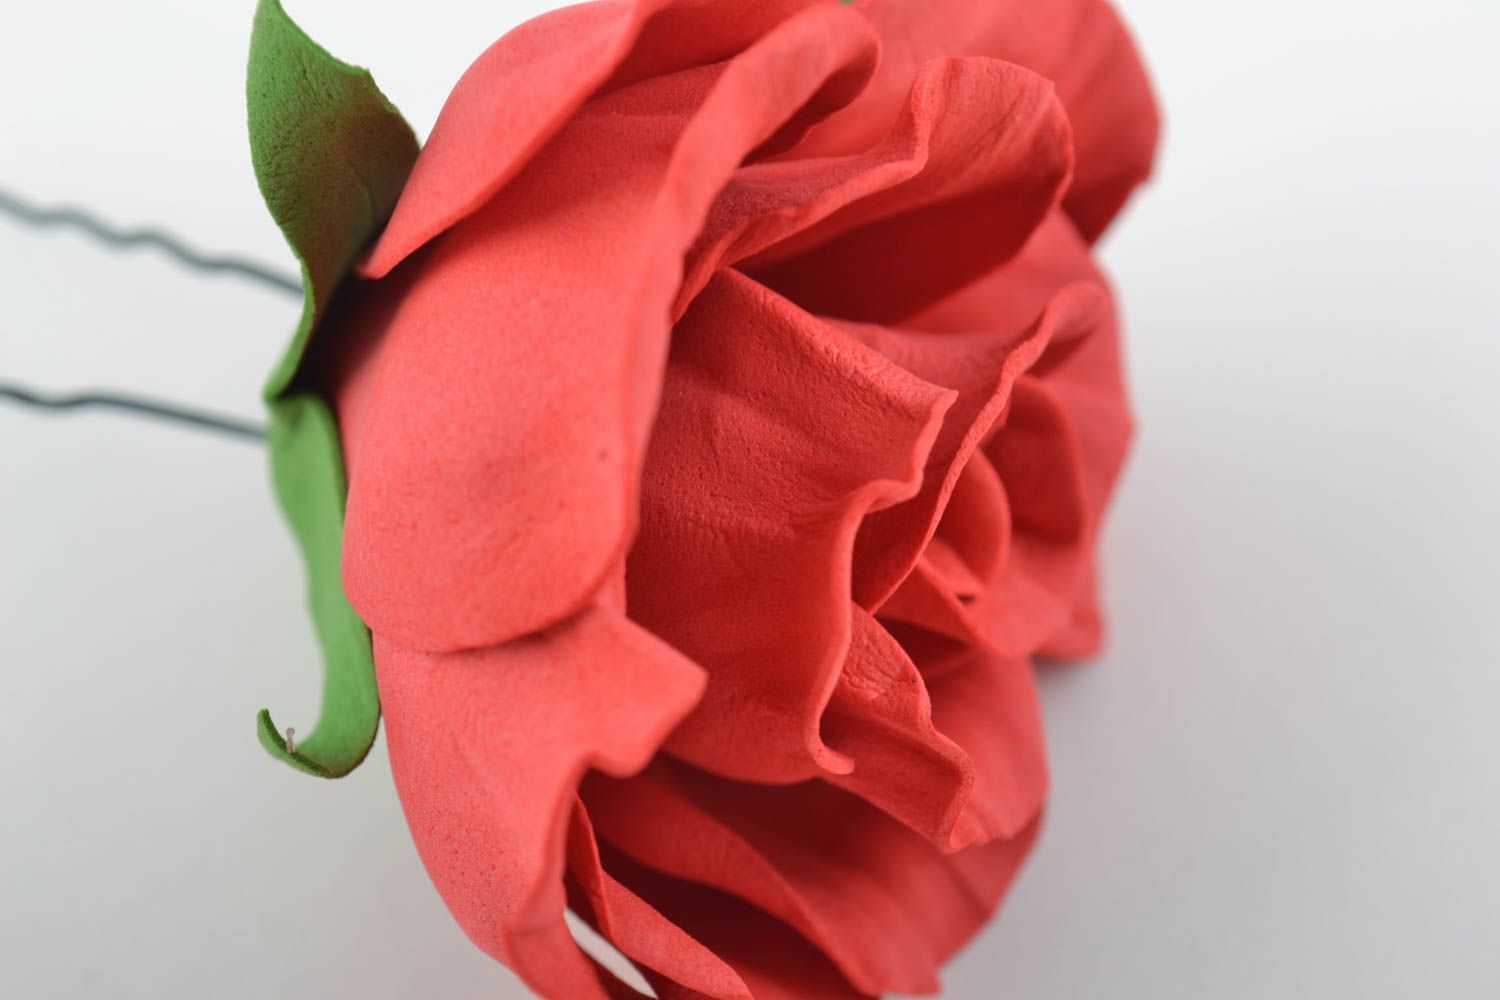 Шпилька из фоамирана с крупным цветком розы красная нарядная красивая хэнд мейд фото 8